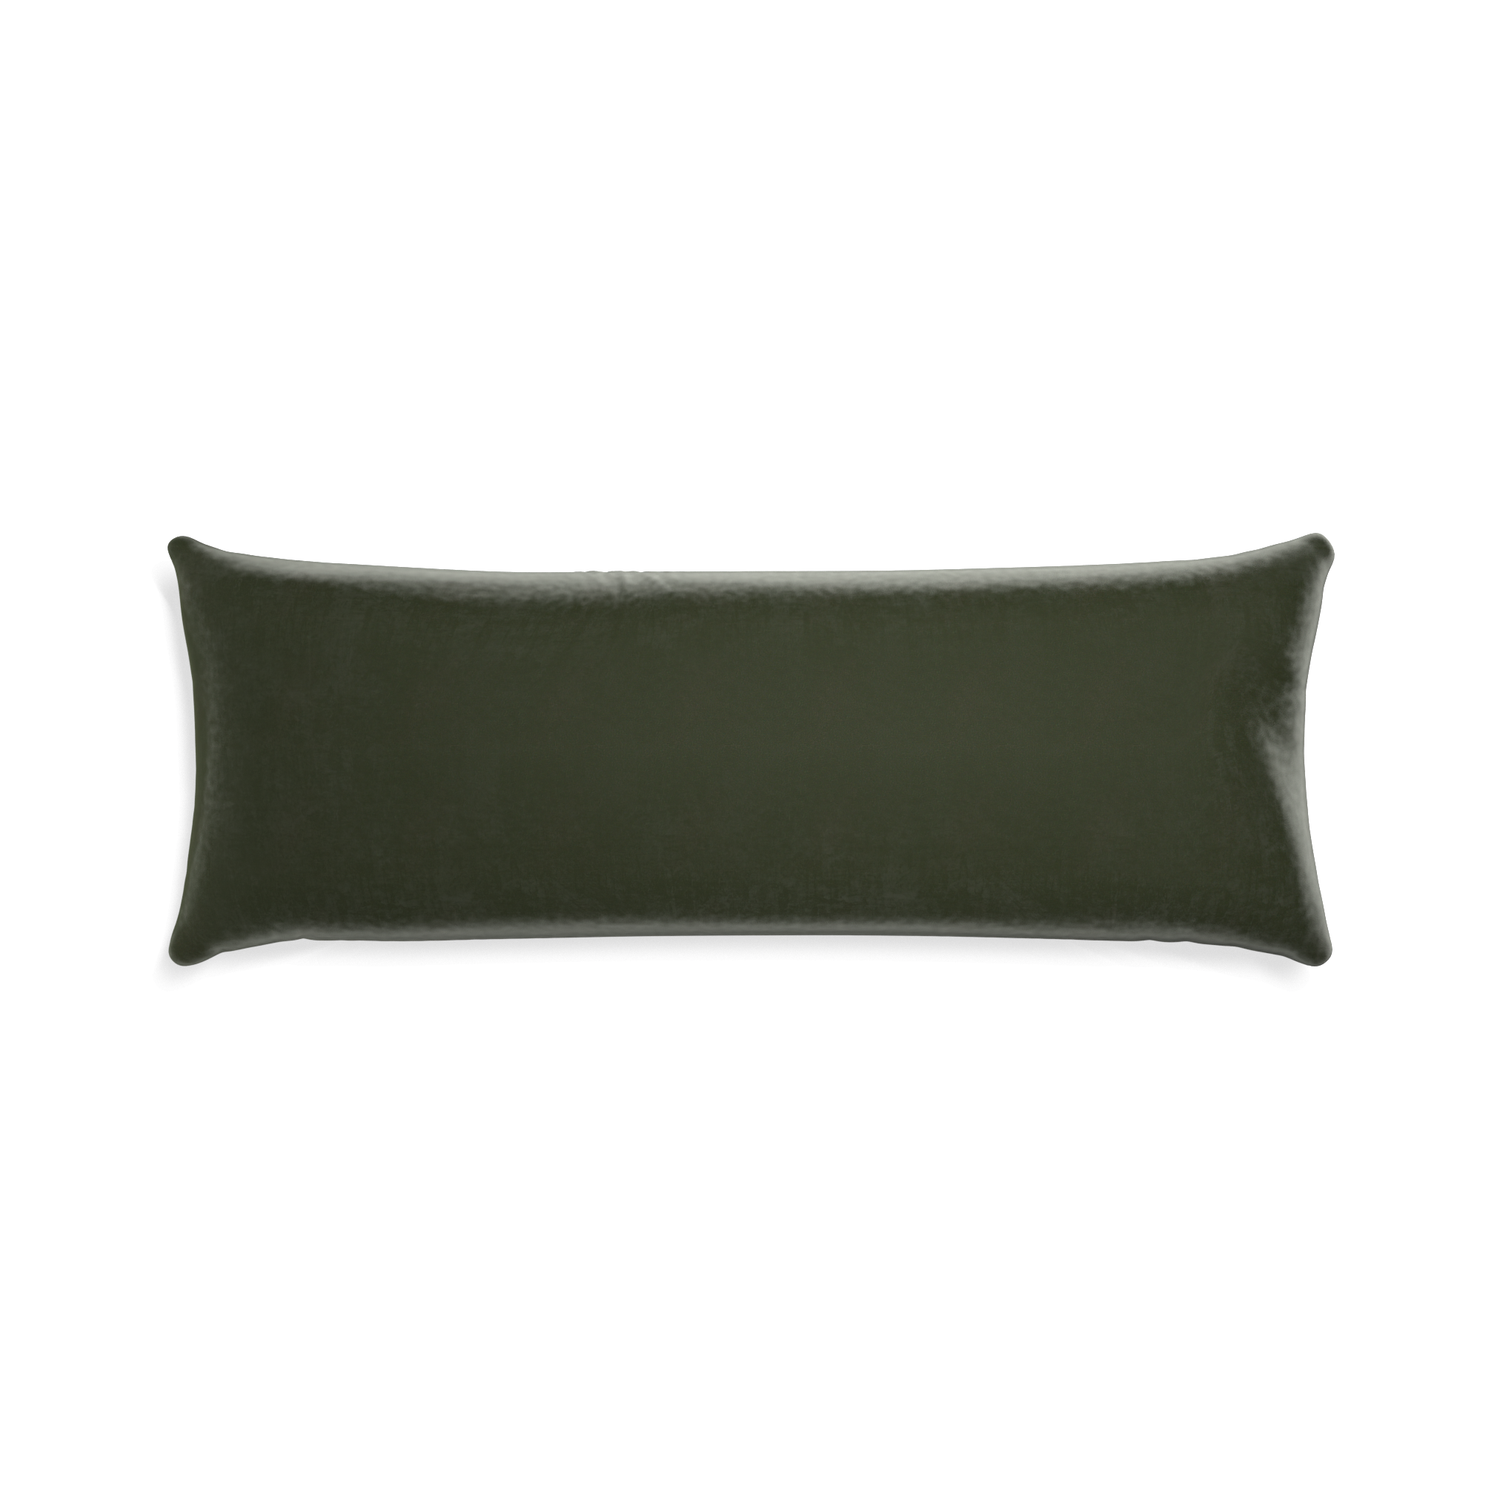 Xl-lumbar fern velvet custom pillow with none on white background